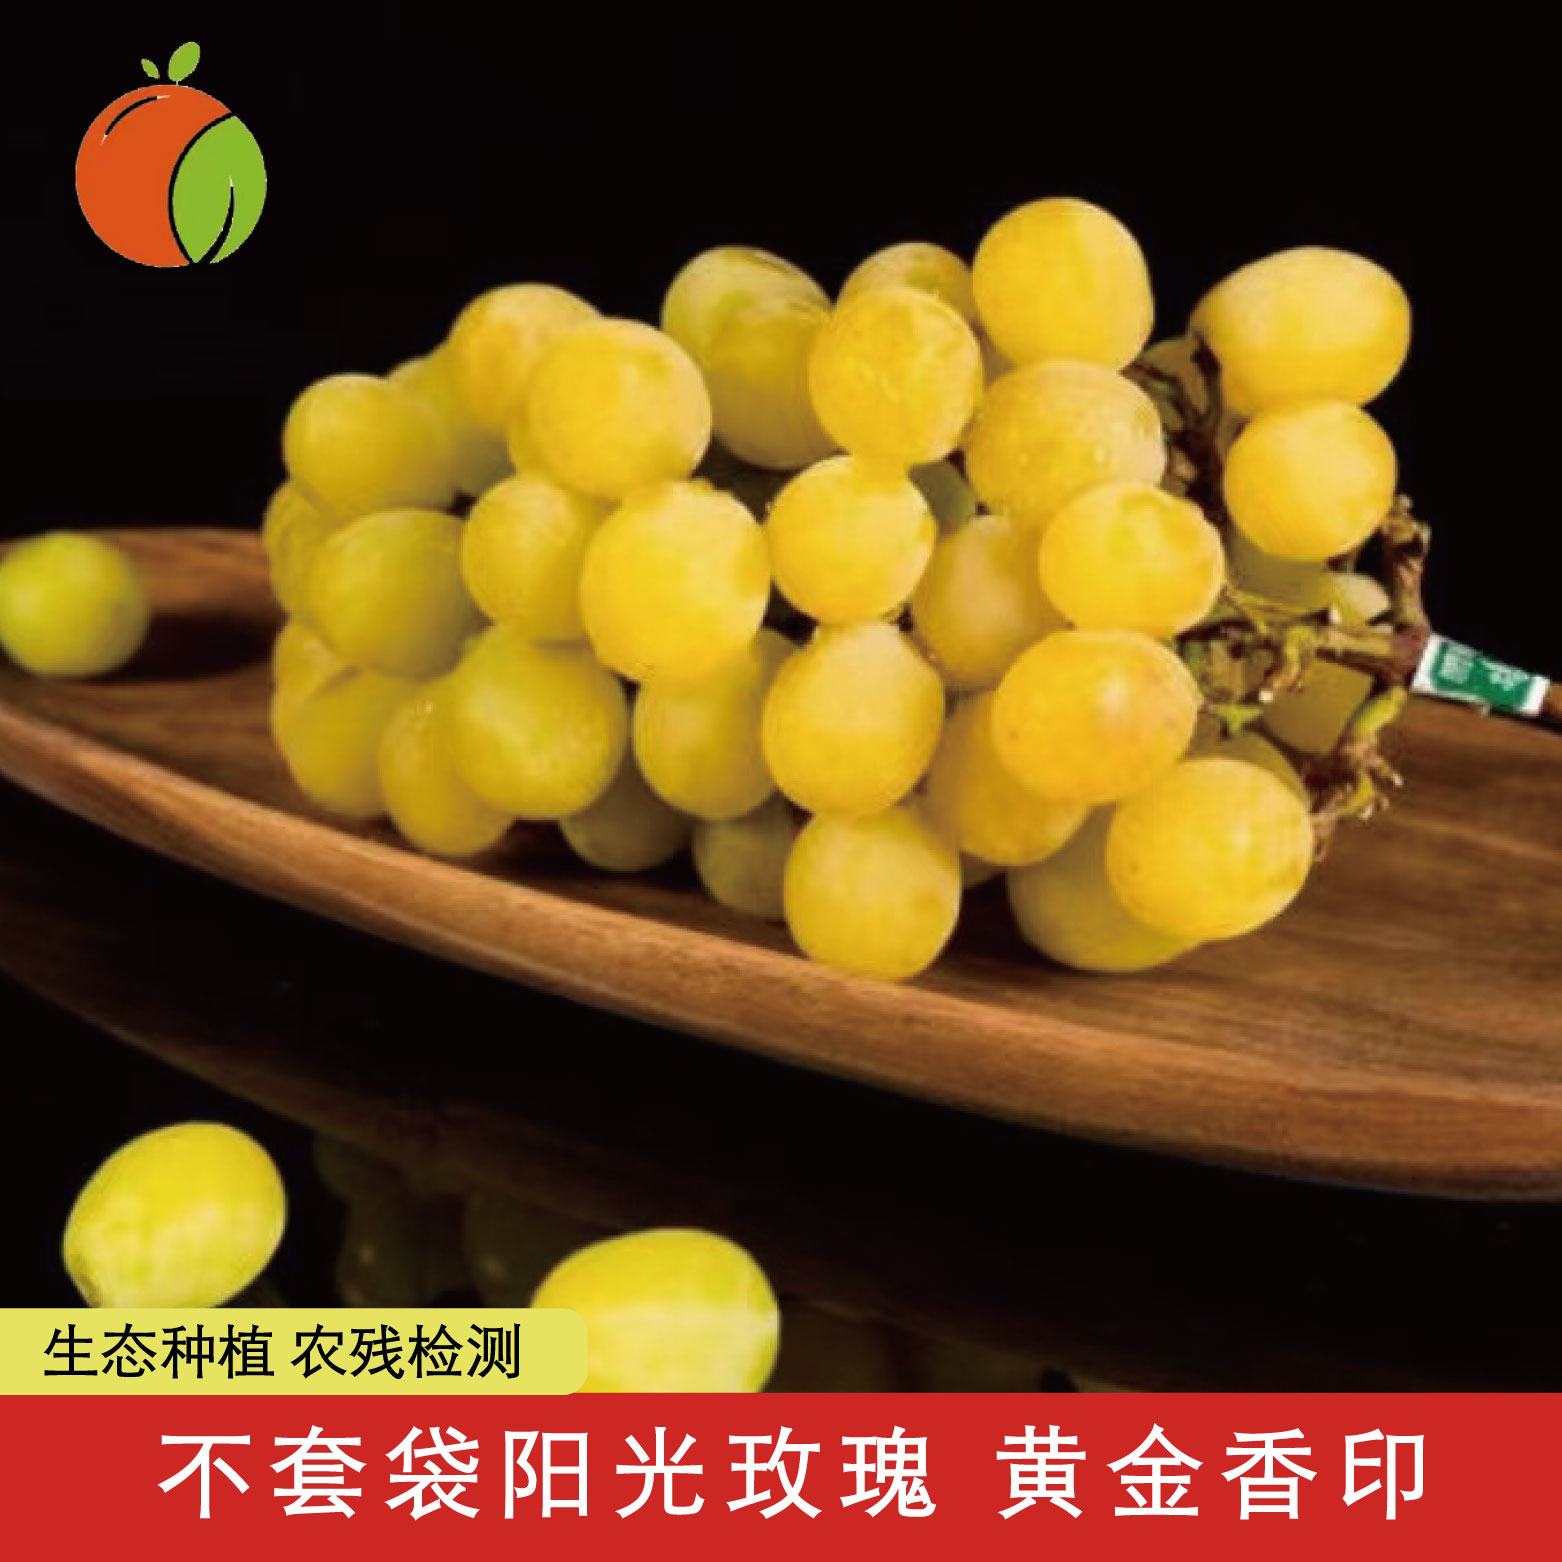 云南农科院GAP认证 自然农法阳光玫瑰黄金香印青提葡萄 多汁香甜